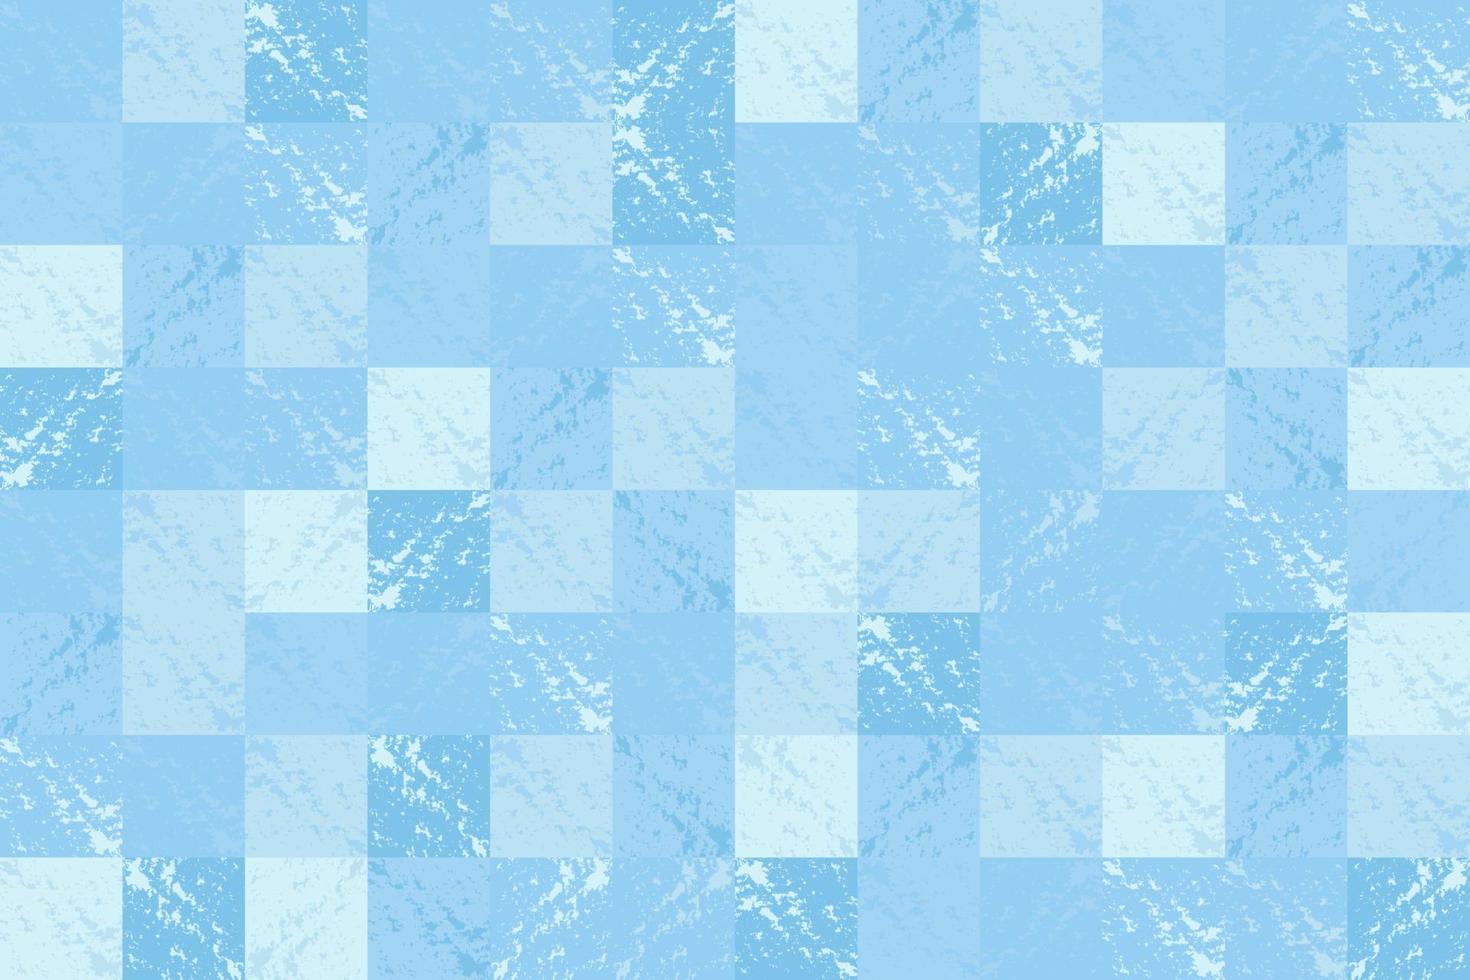 abstraktes blaues Quadrat Fliese Wand Musterdesign Farbspritzer mit hoher Auflösung. quadratische nahtlose Textur und Hintergrund vektor